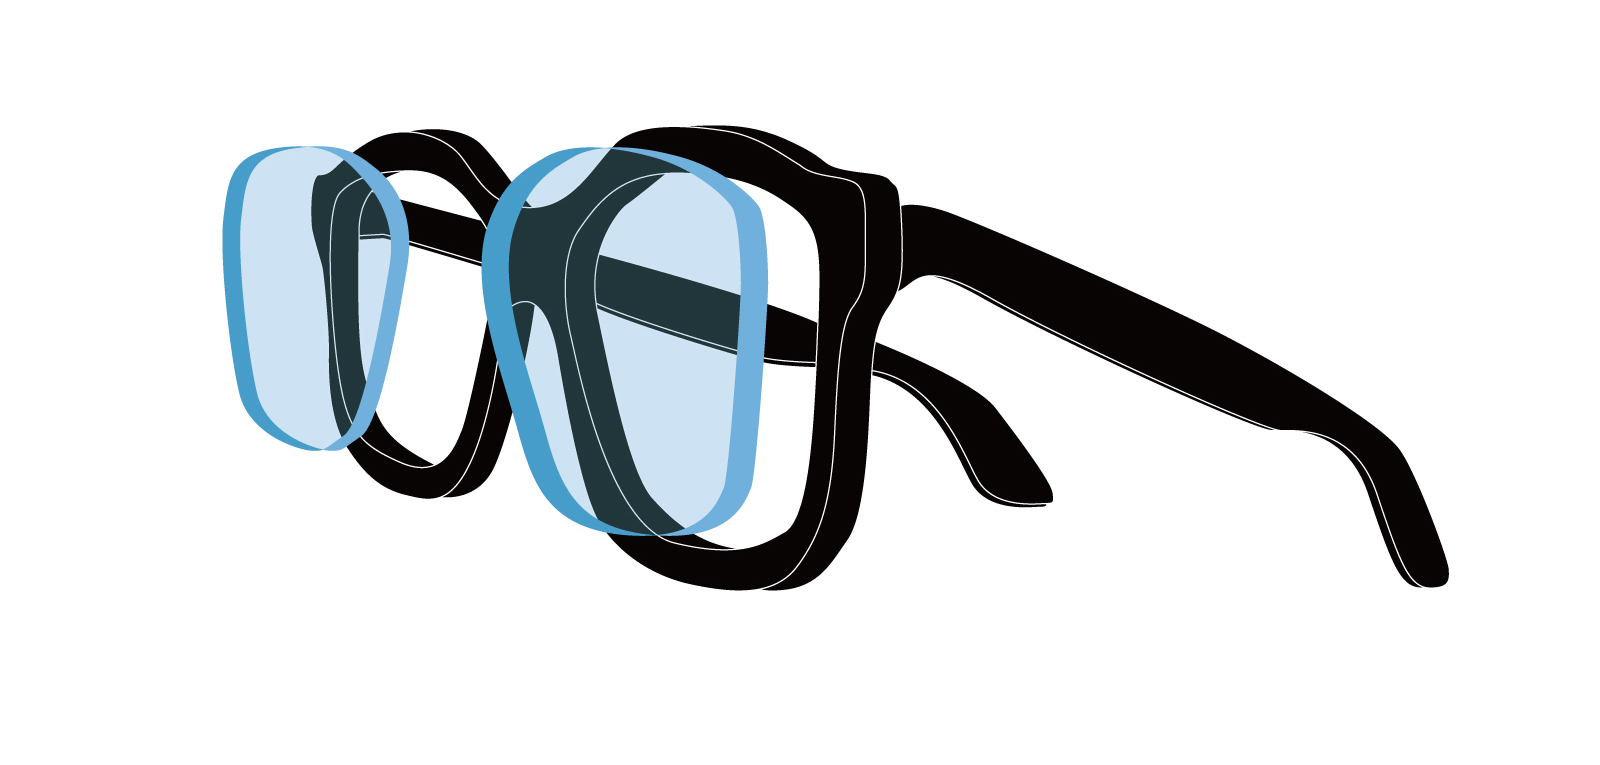 Ultra thin lenses for glasses